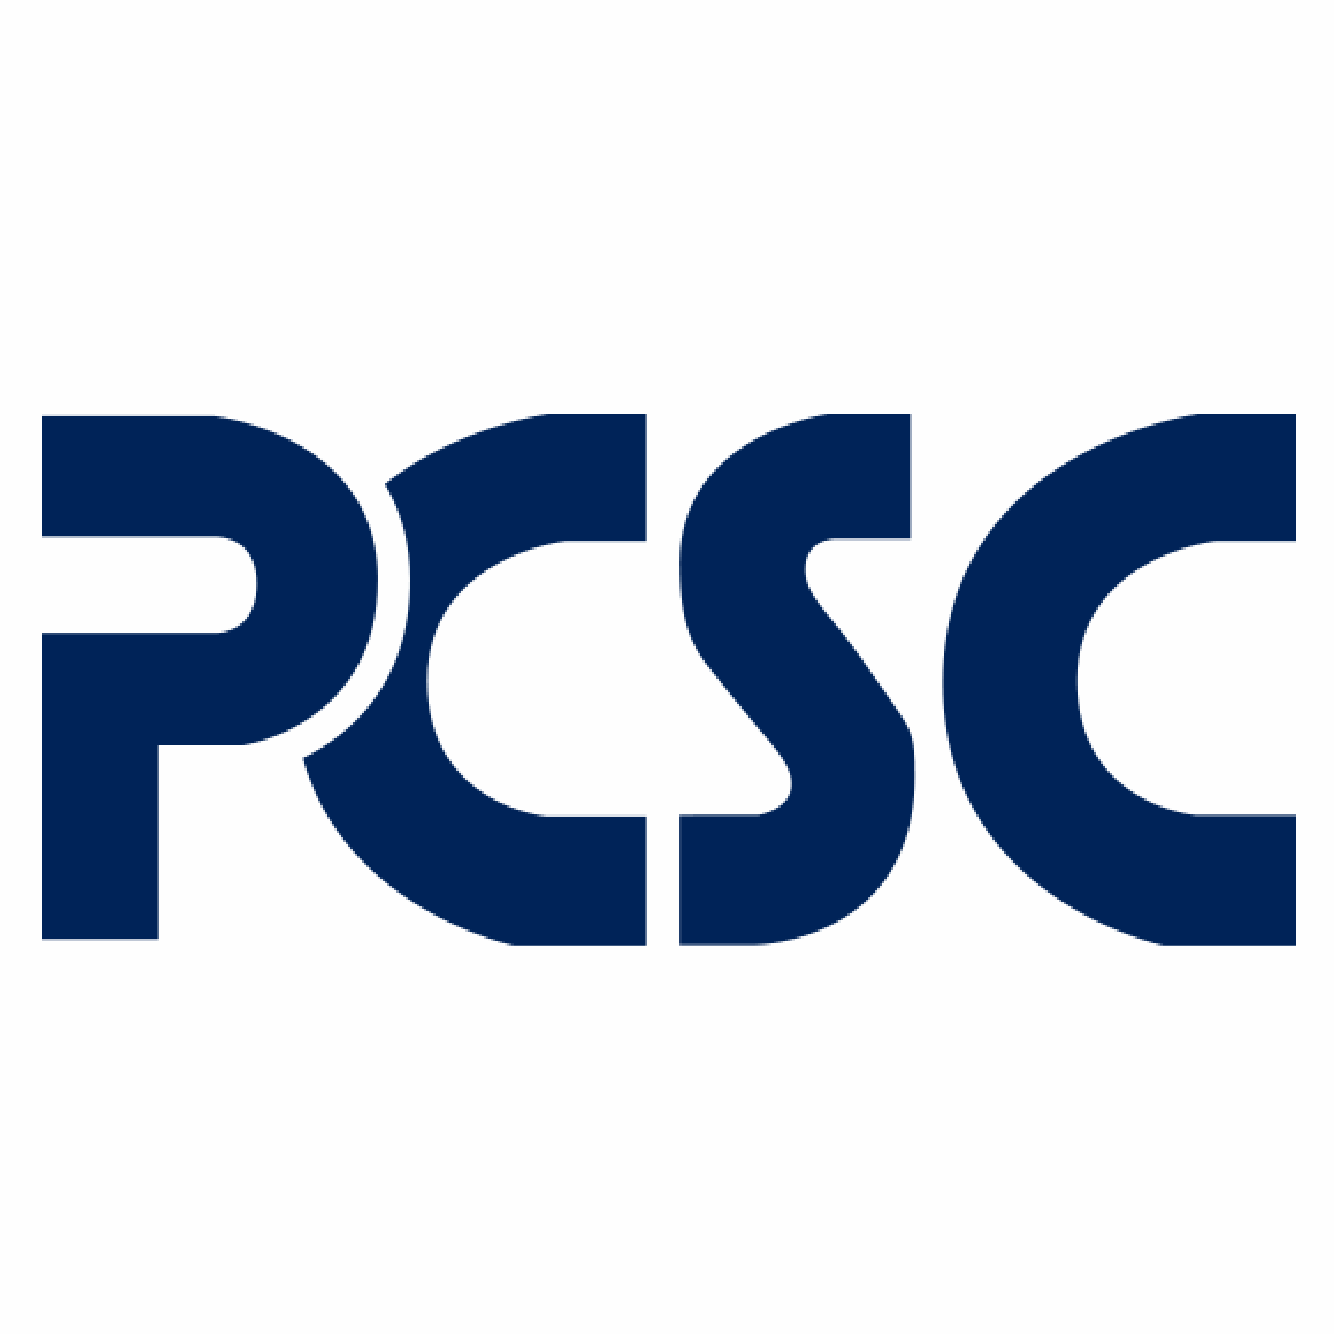 http://securetech.ae/wp-content/uploads/2019/02/18.PCSC_.png